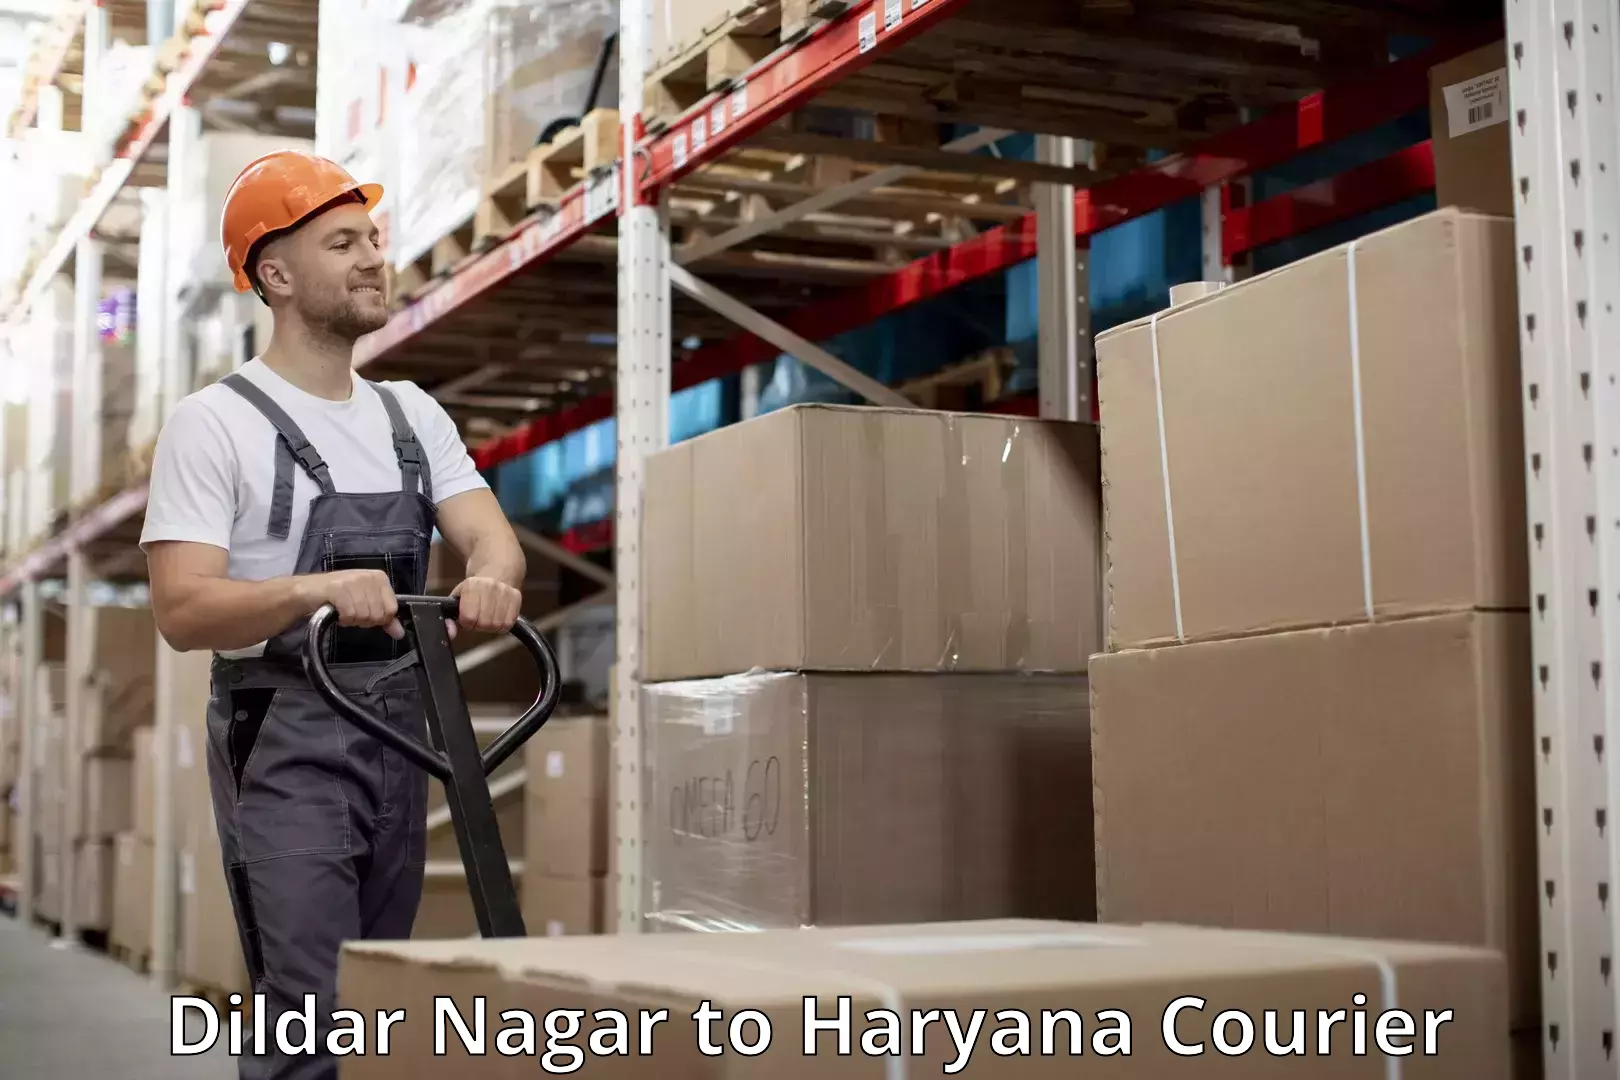 Baggage transport quote Dildar Nagar to Haryana